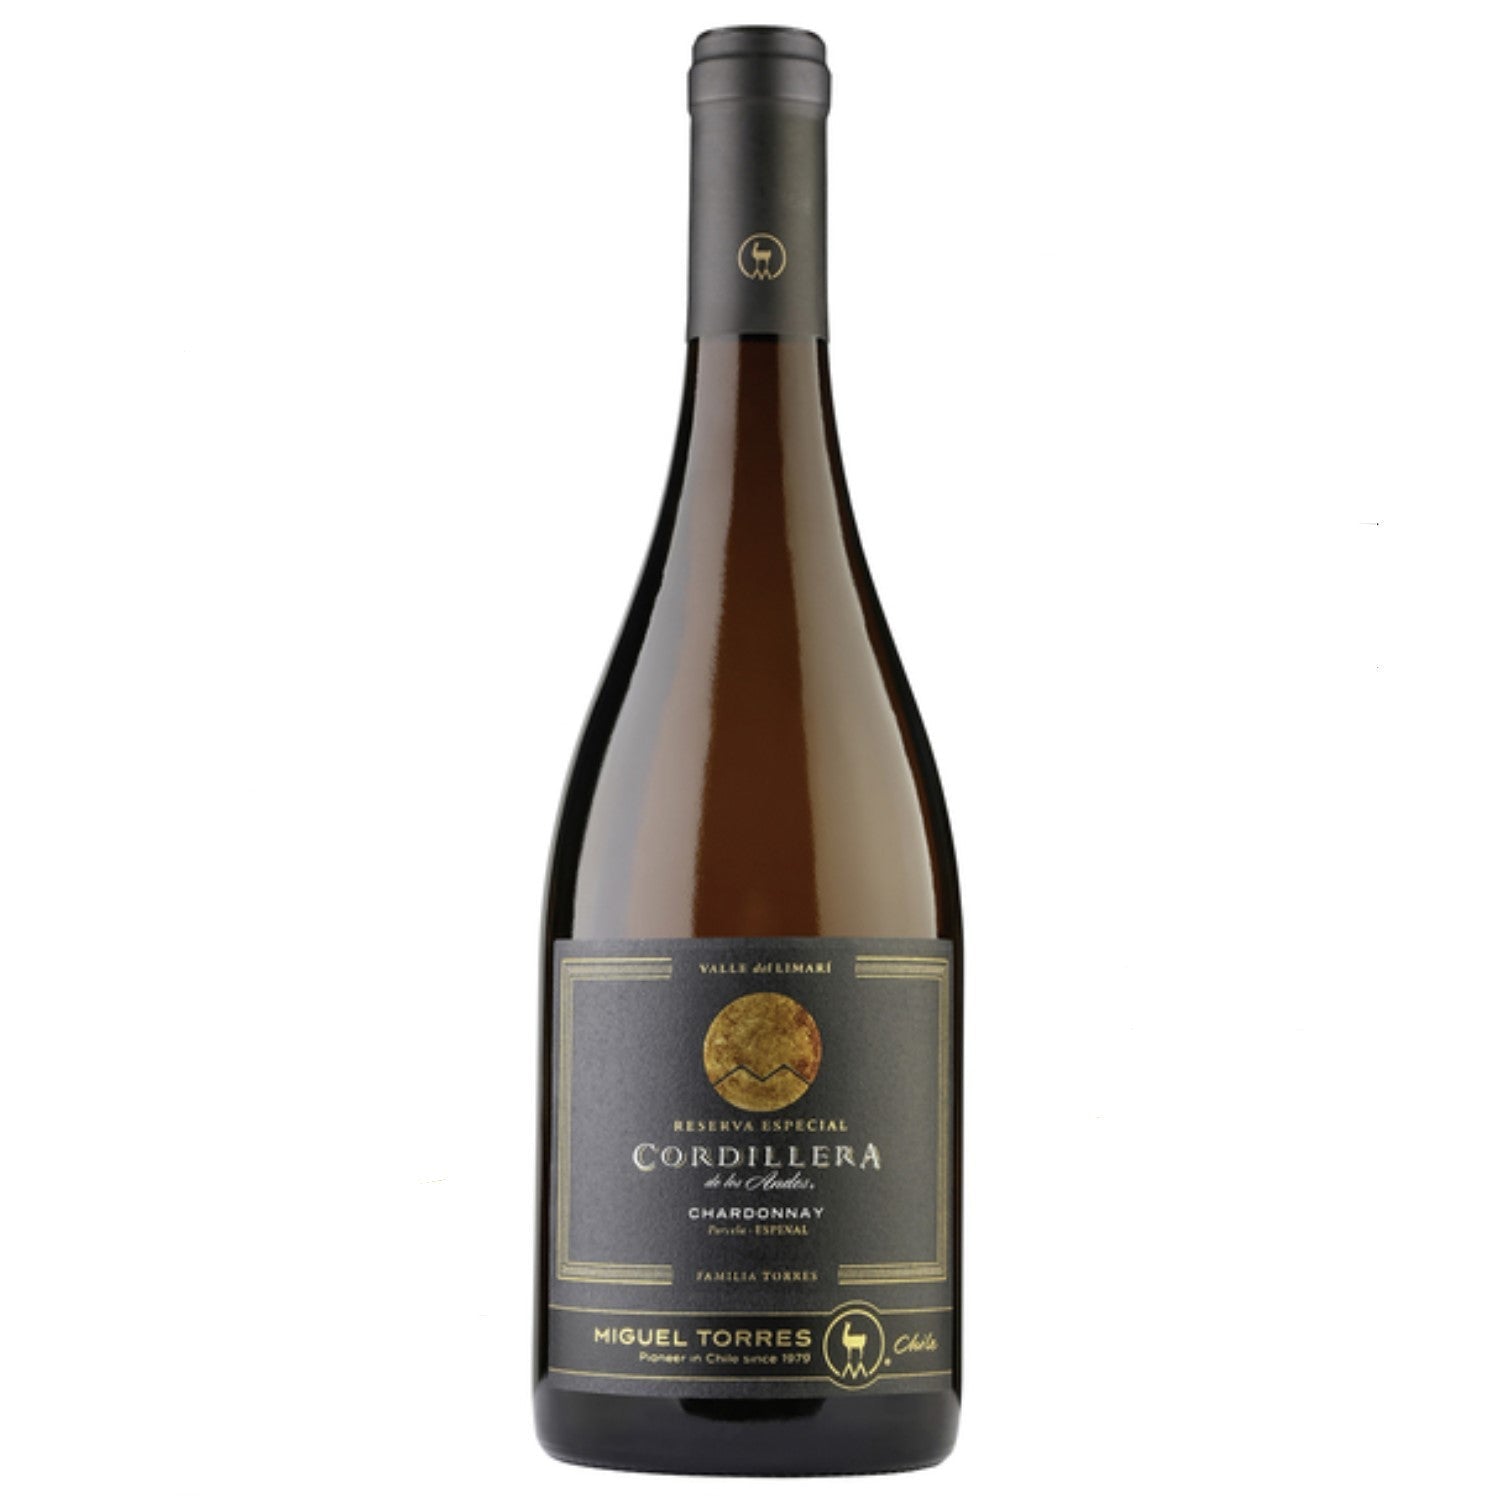 Miguel Torres Cordillera Chardonnay Limari Valley Weißwein Wein Trocken Chile (3 x 0.75l) - Versanel -